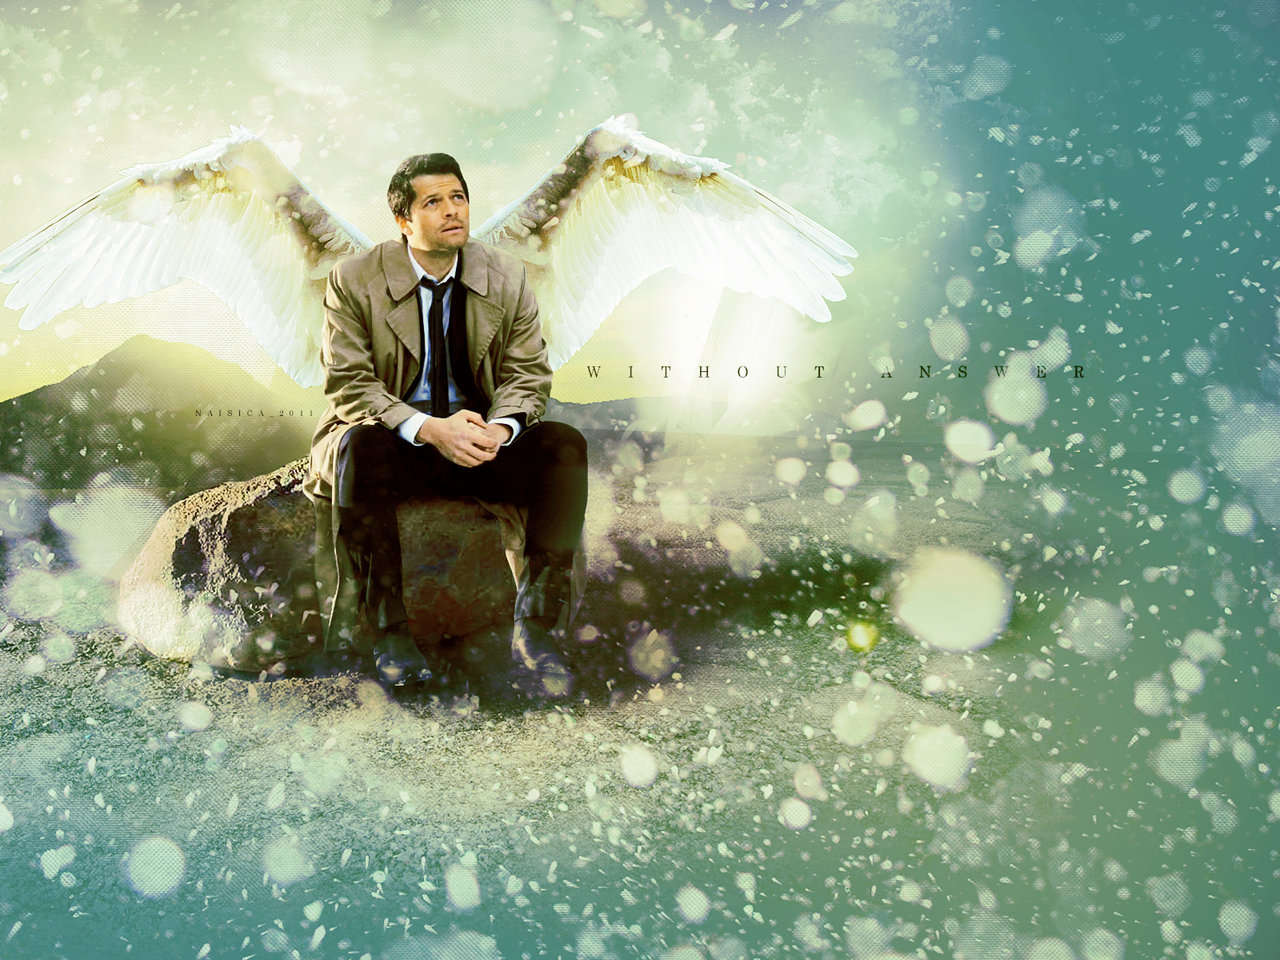 Supernatural Castiel Wallpaper Widescreen Image